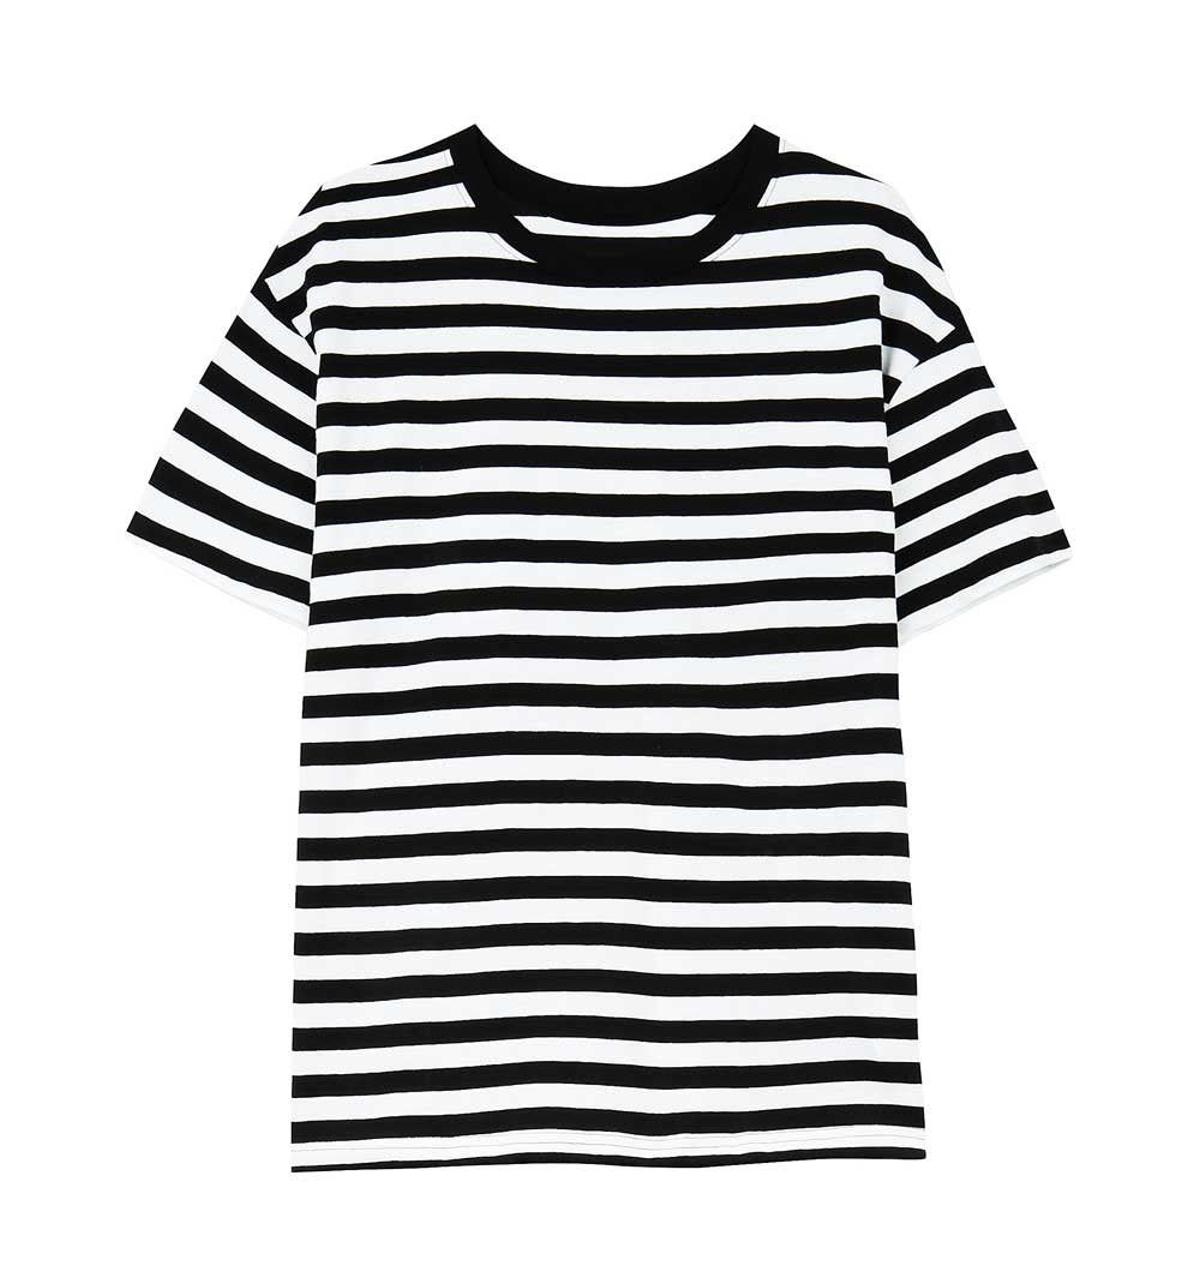 Camiseta de algodón de rayas blancas y negras de Bershka (Precio: 9, 99 euros)